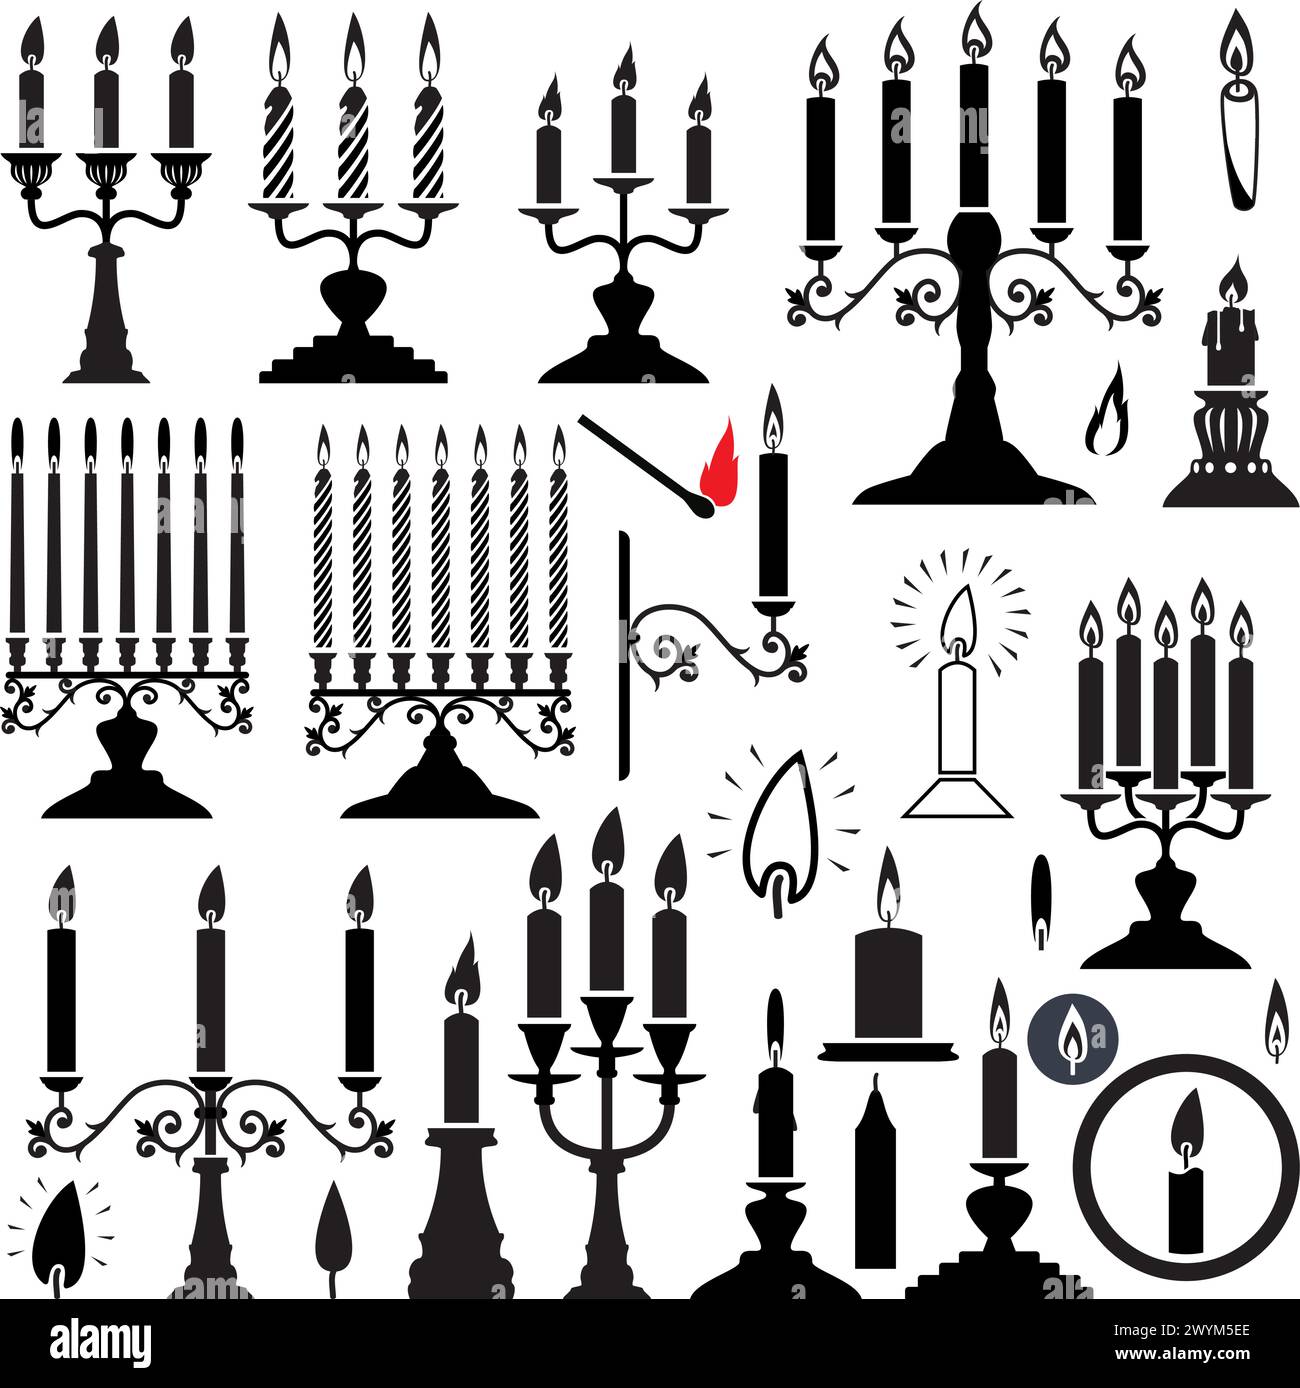 silhouettes vectorielles noires et blanches de chandeliers et de bougies Illustration de Vecteur